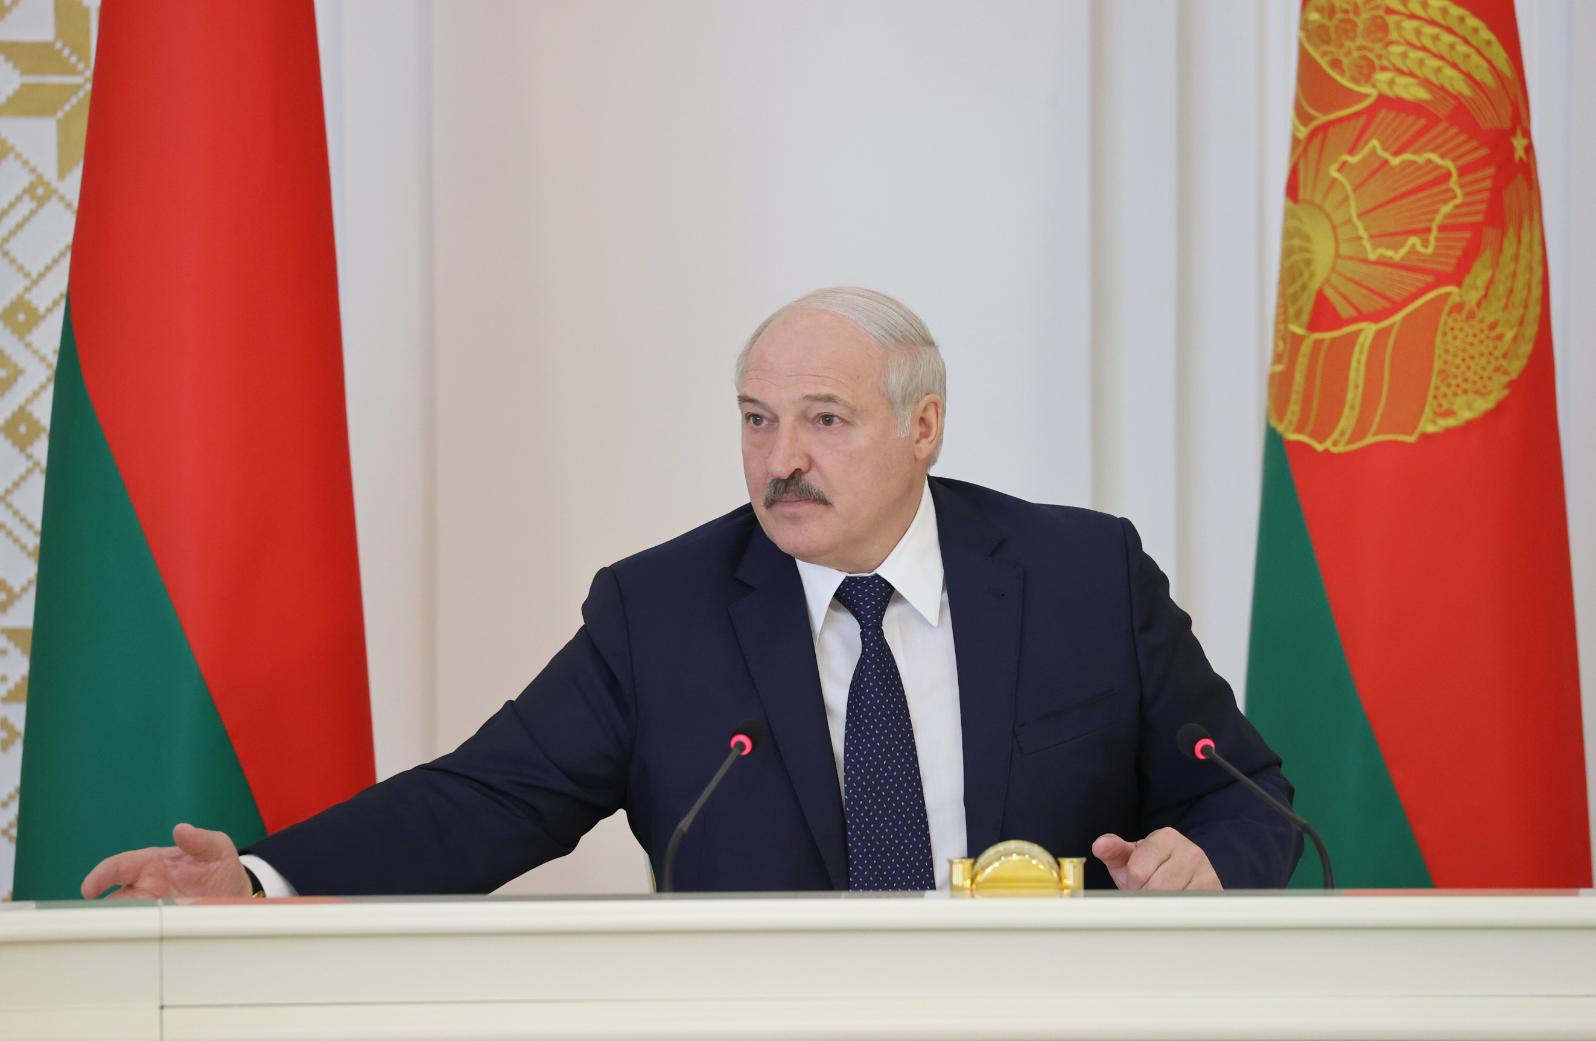 Александр Лукашенко: Минск и Москва в условиях санкций Запада нашли других партнеров, которые с нами успешно работают